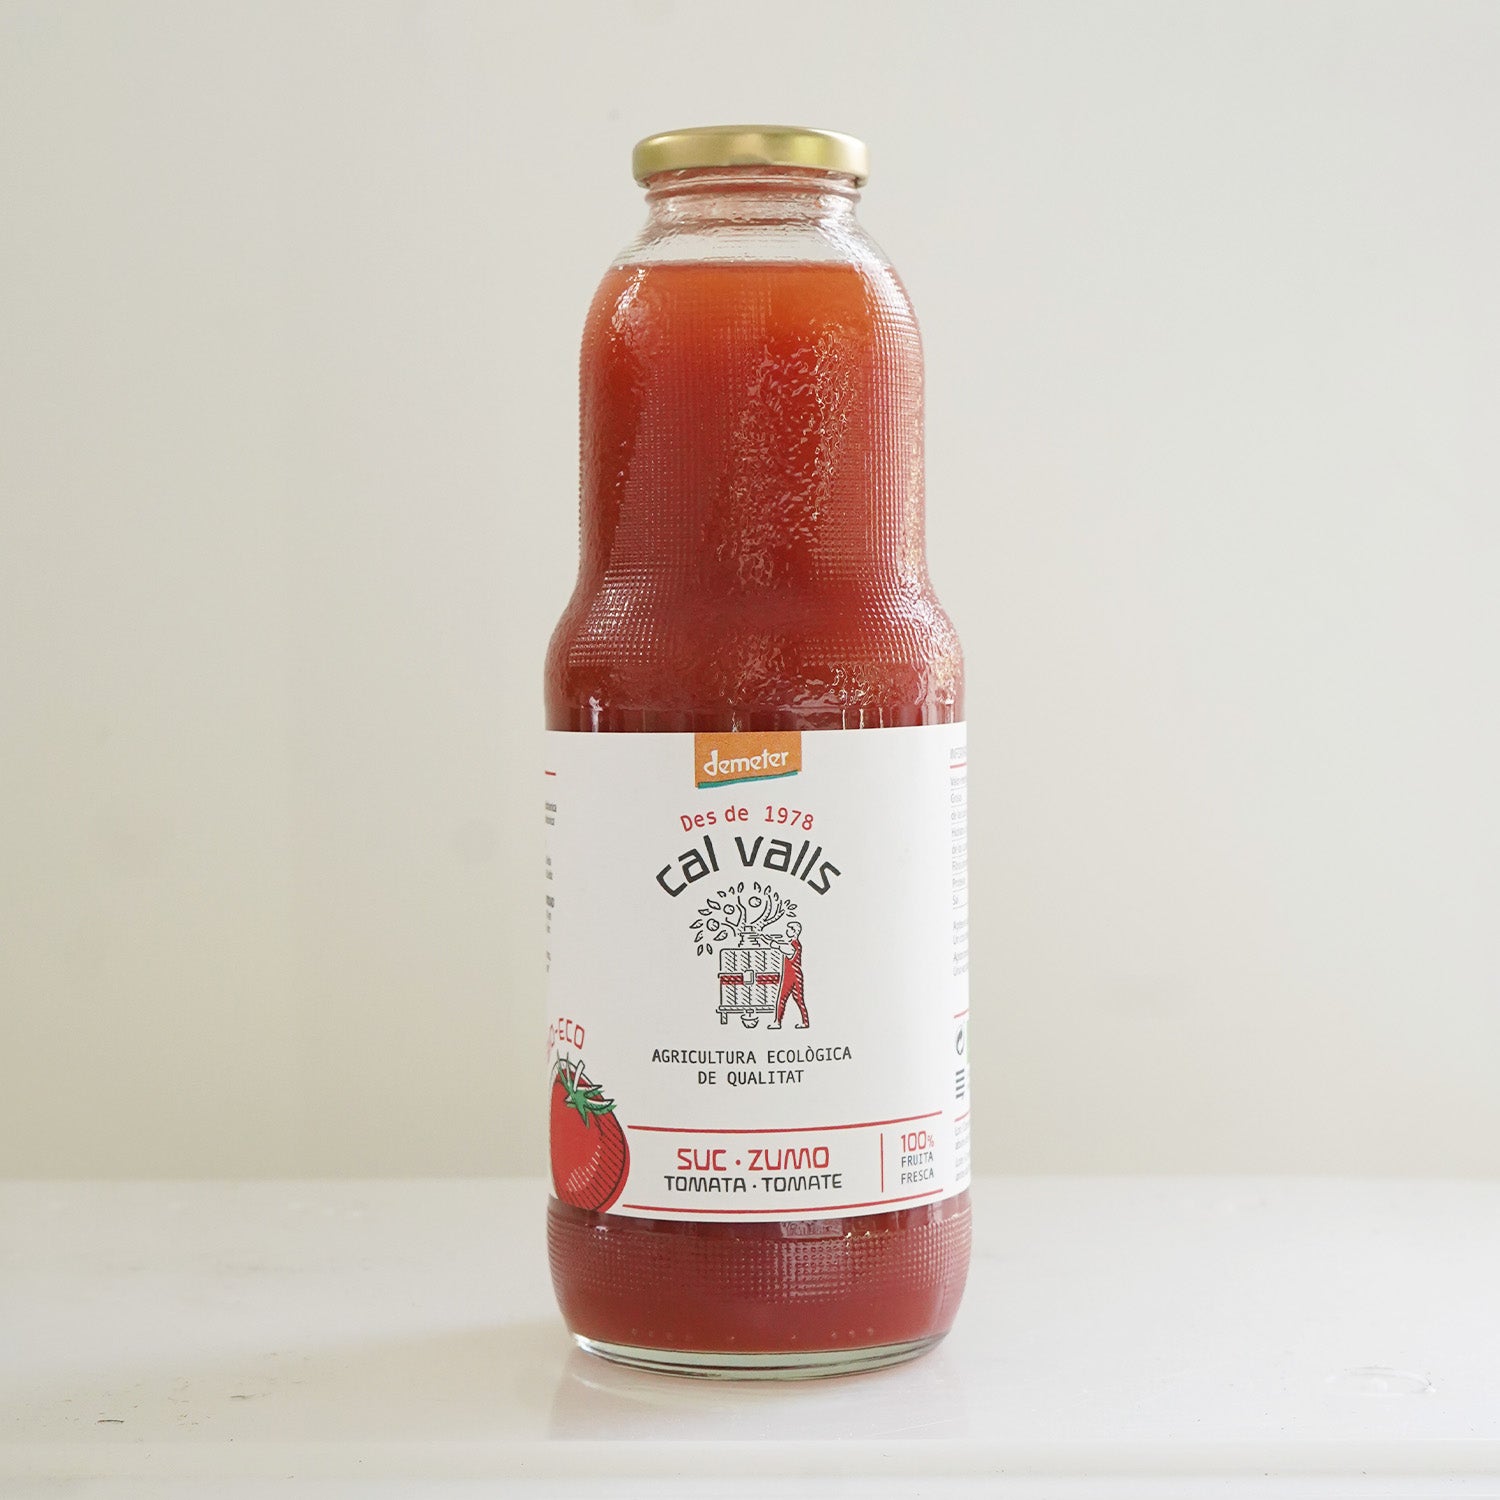 Botella de cristal de zumo de tomate ecológico de la marca cal valls